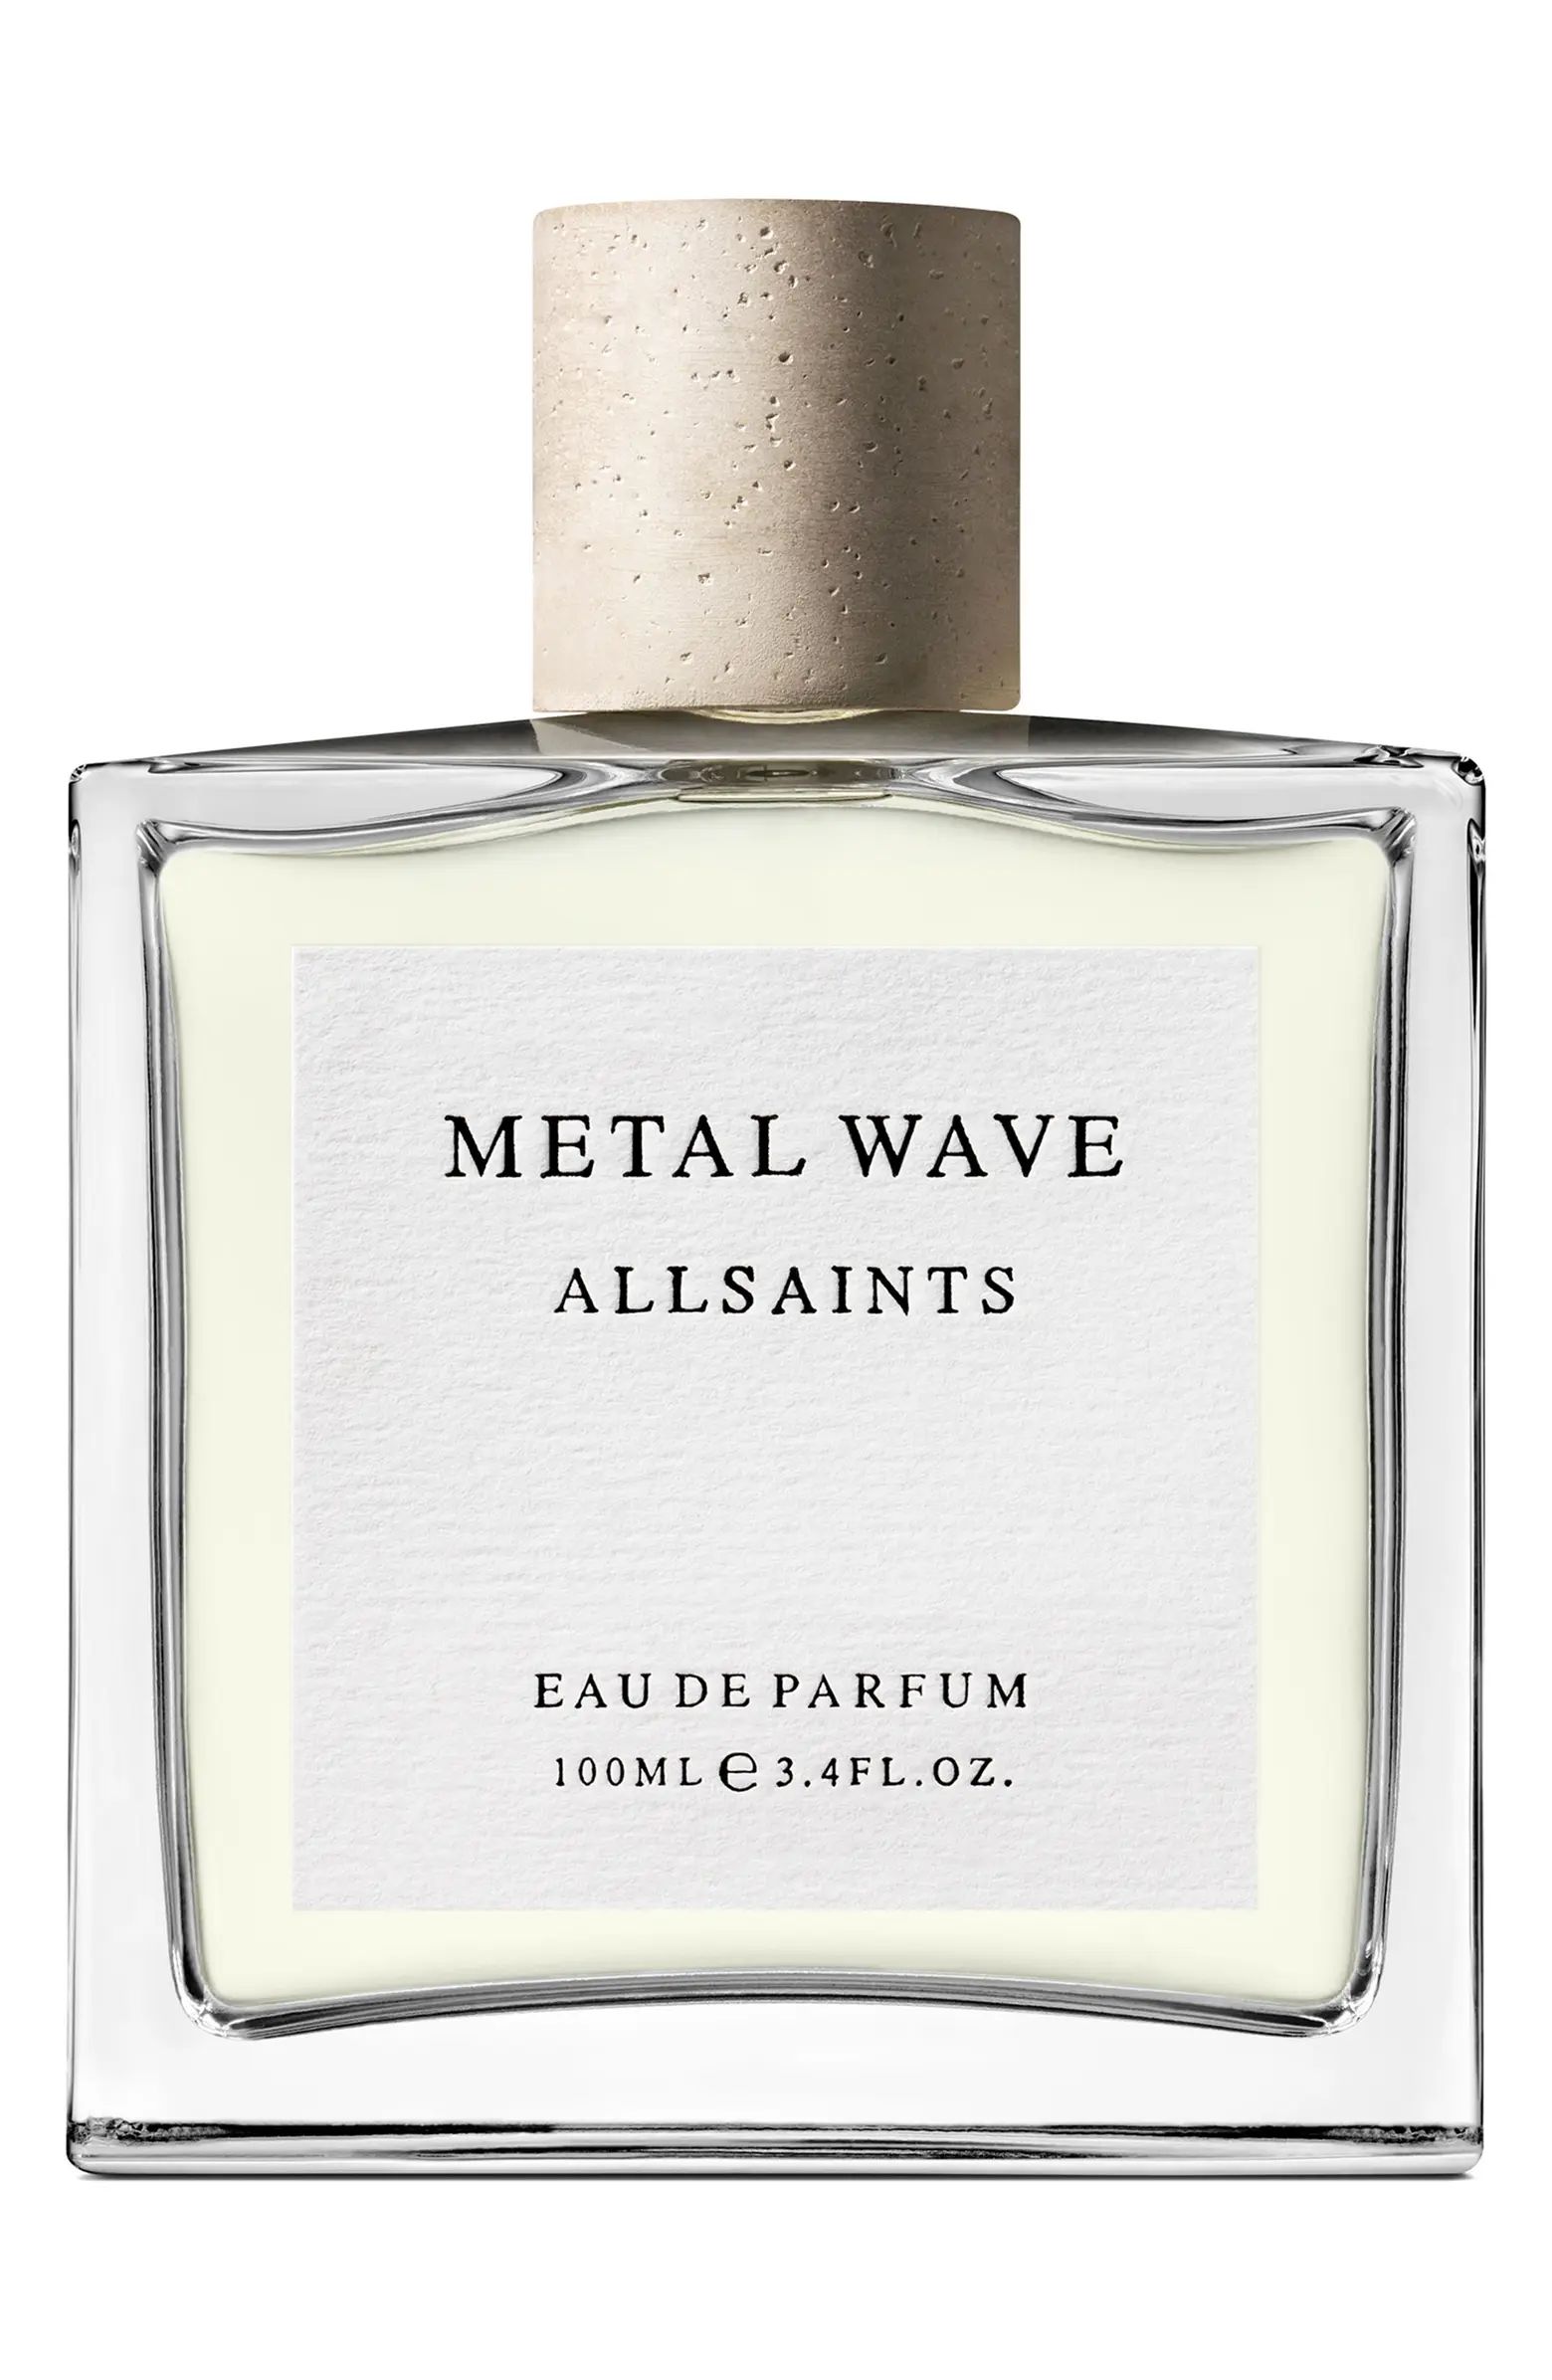 Metal Wave Eau de Parfum | Nordstrom